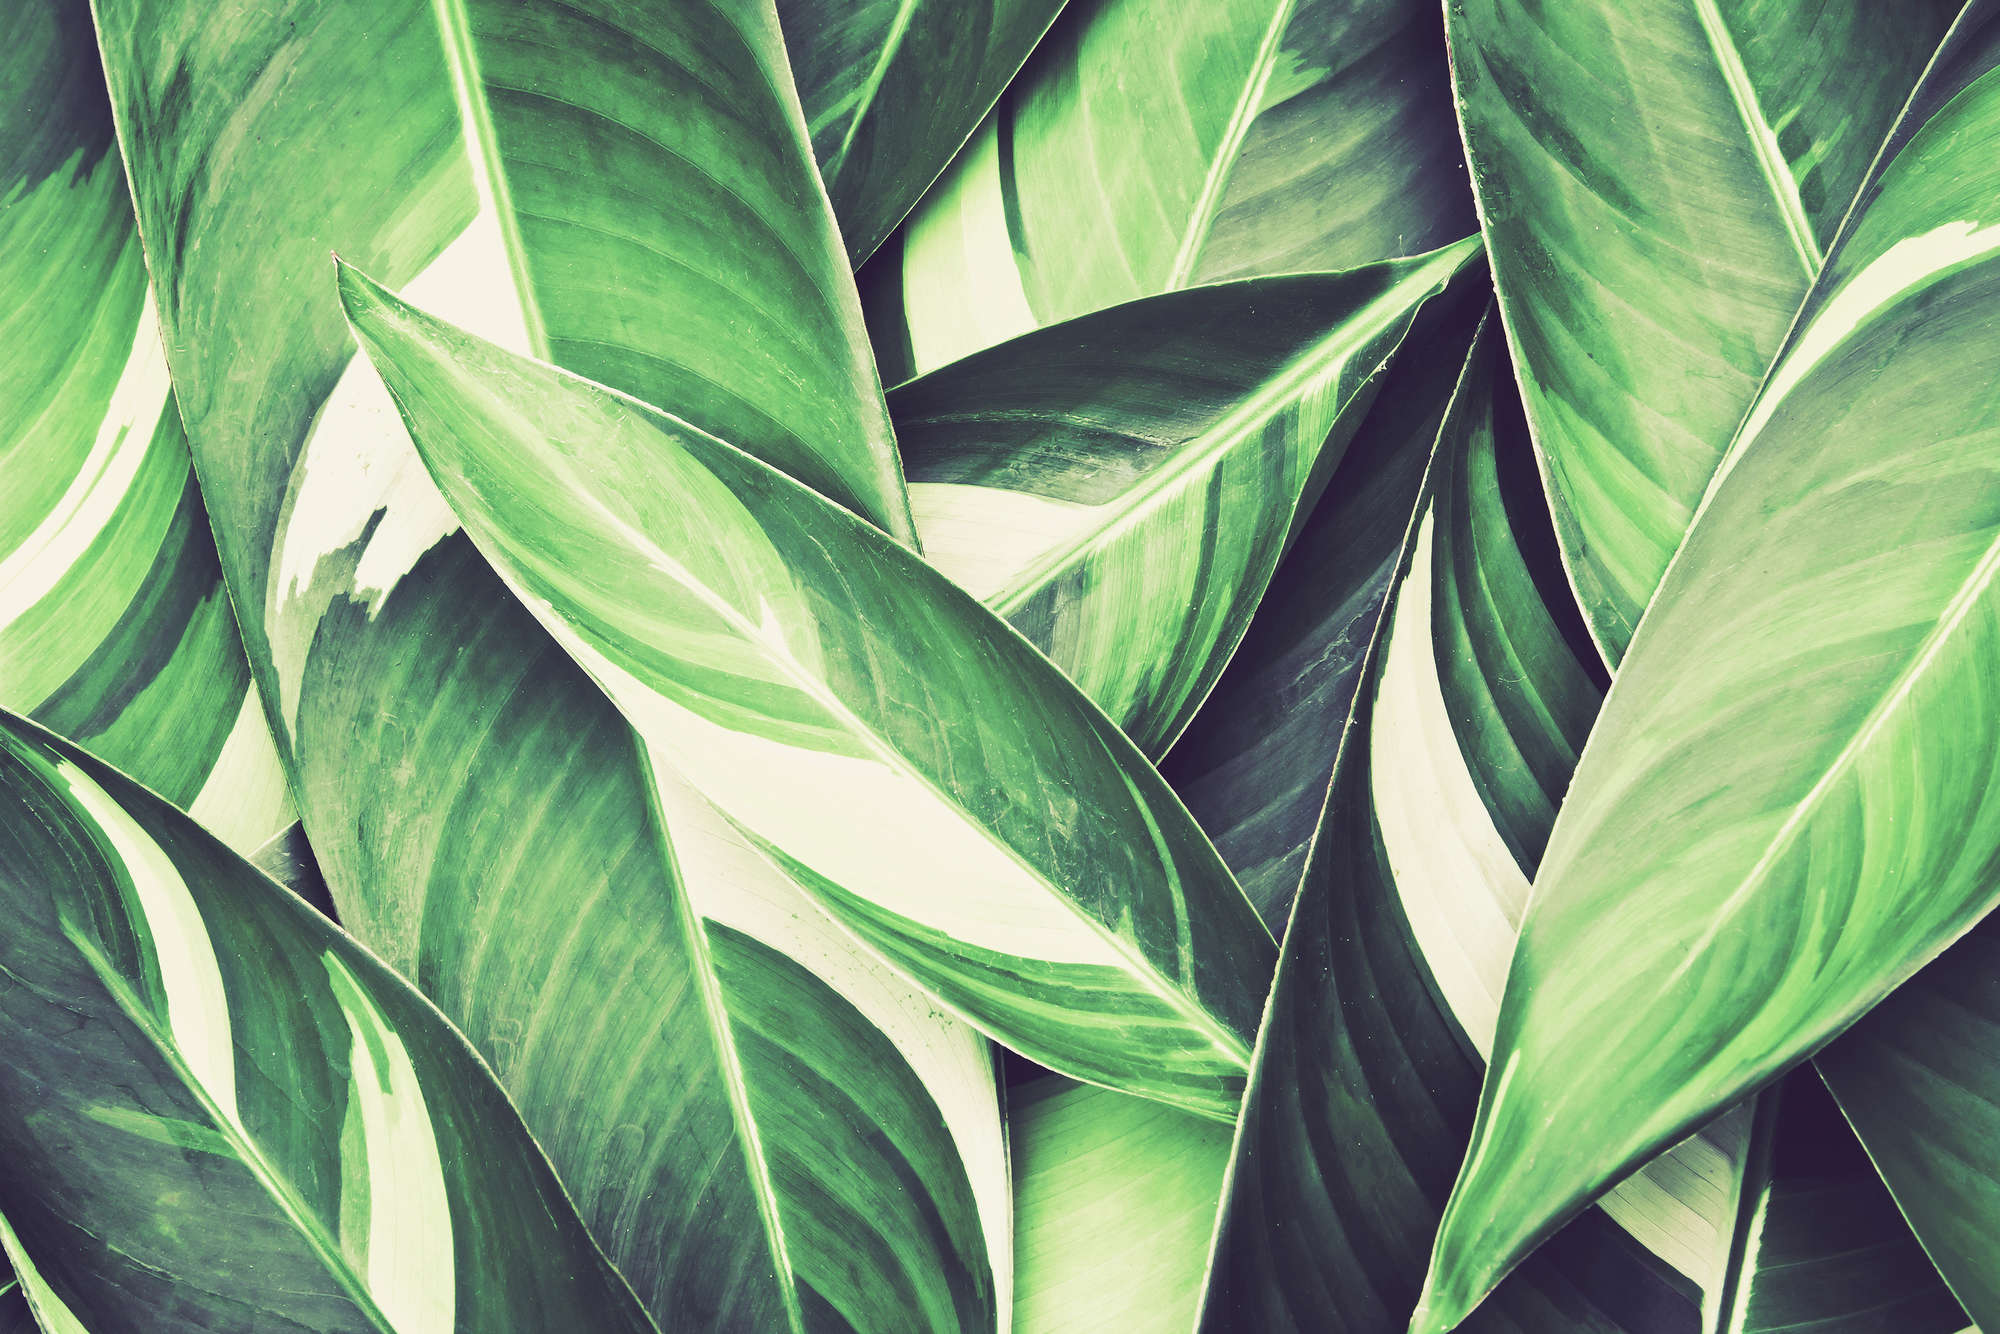             Nature Papier peint motif feuilles de palmier vert sur intissé nacré lisse
        